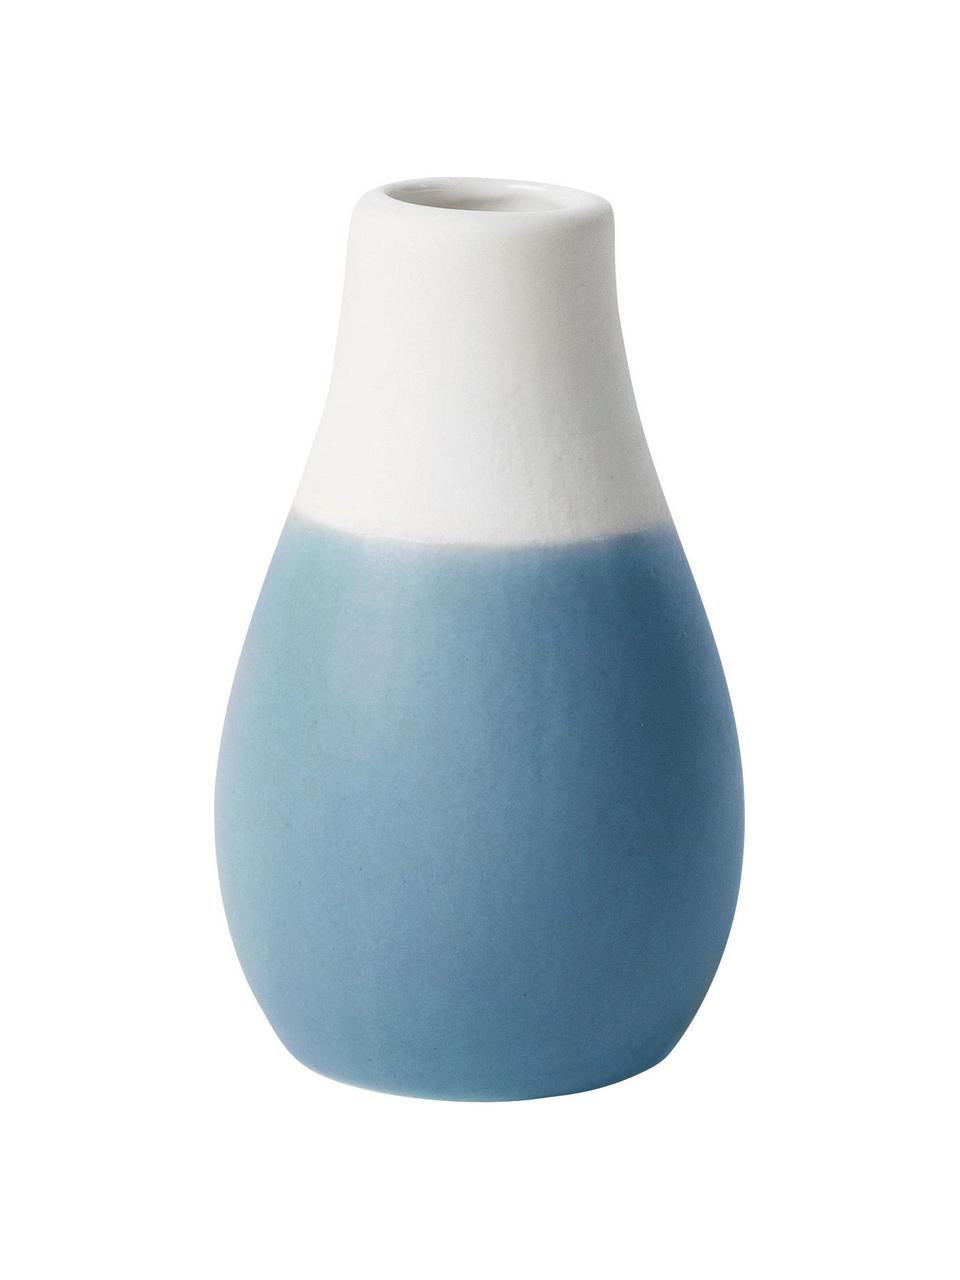 Sada malých váz z kameniny Pastell, 3 díly, Odstíny modré, bílá